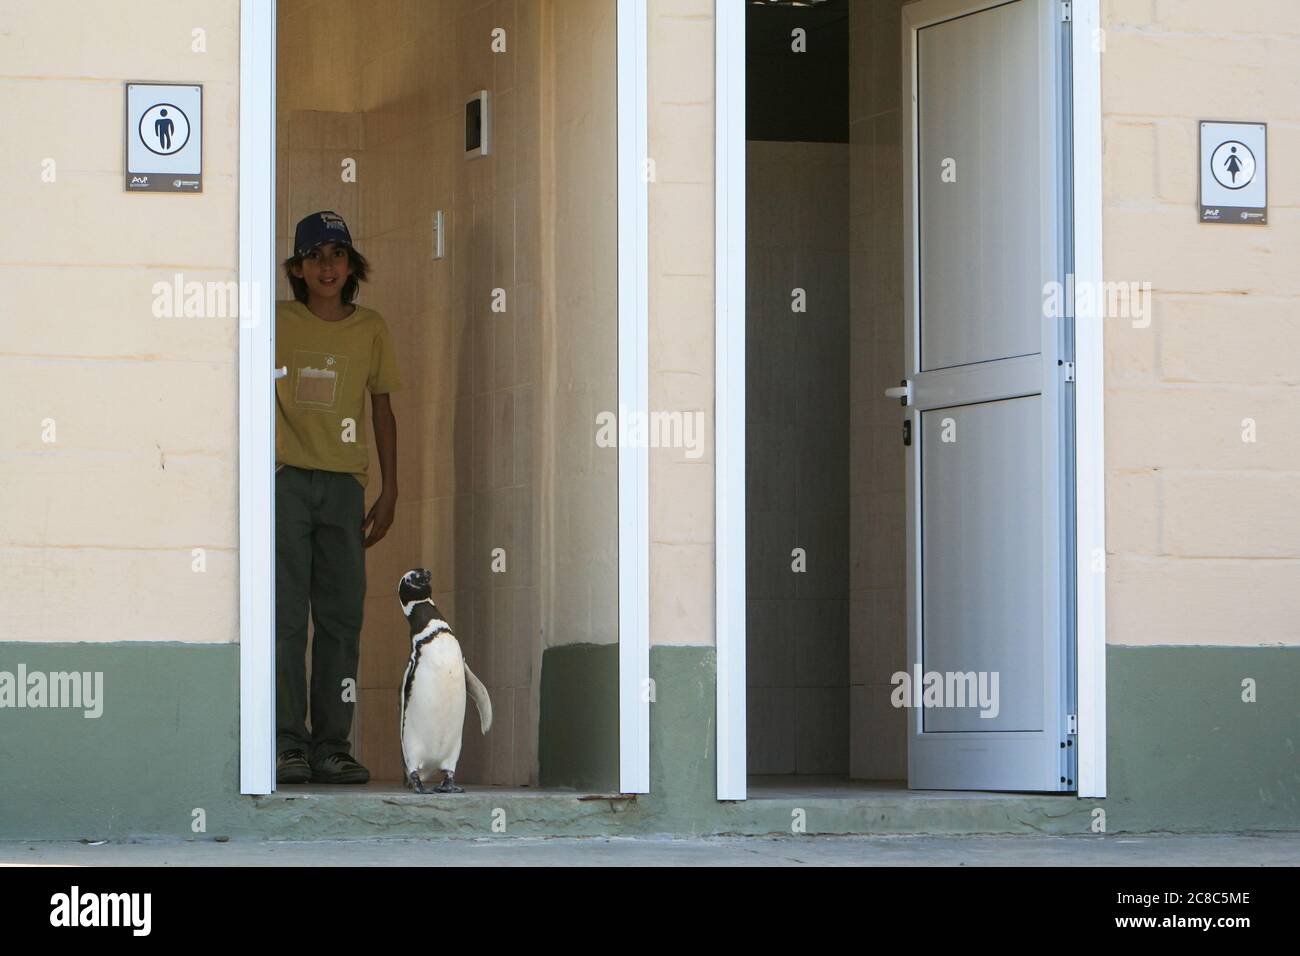 Pinguino magellanico (Sfenisco magellanicus) che esce dalla toilette pubblica degli uomini. Foto Stock